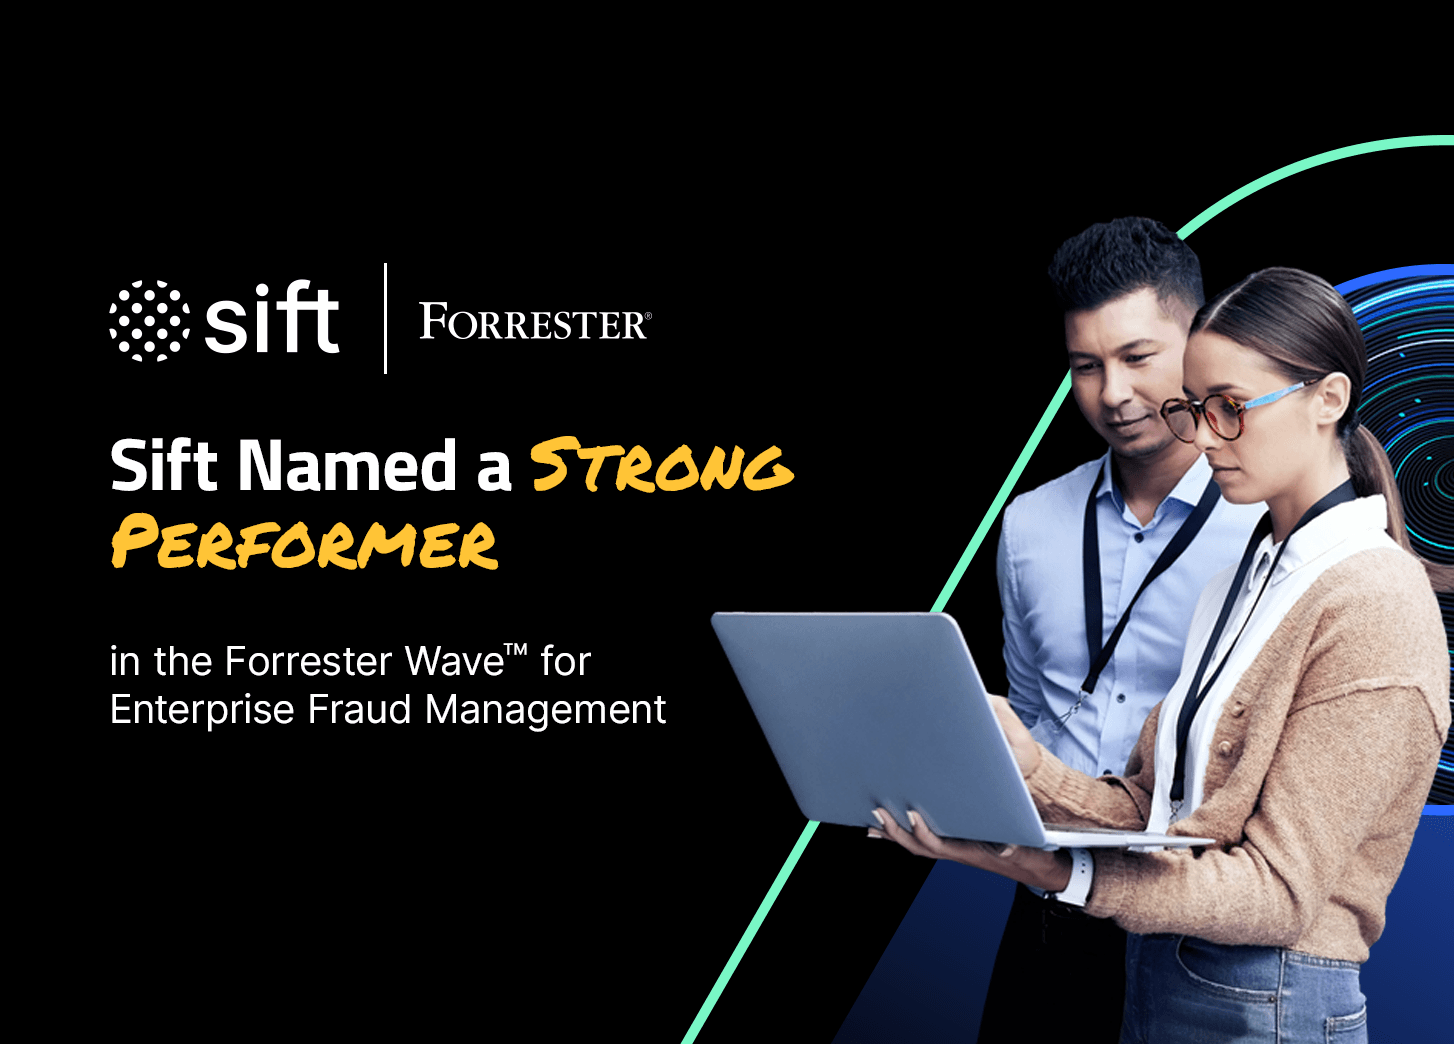 Sift named a strong performer in Forrester Wave for EFM